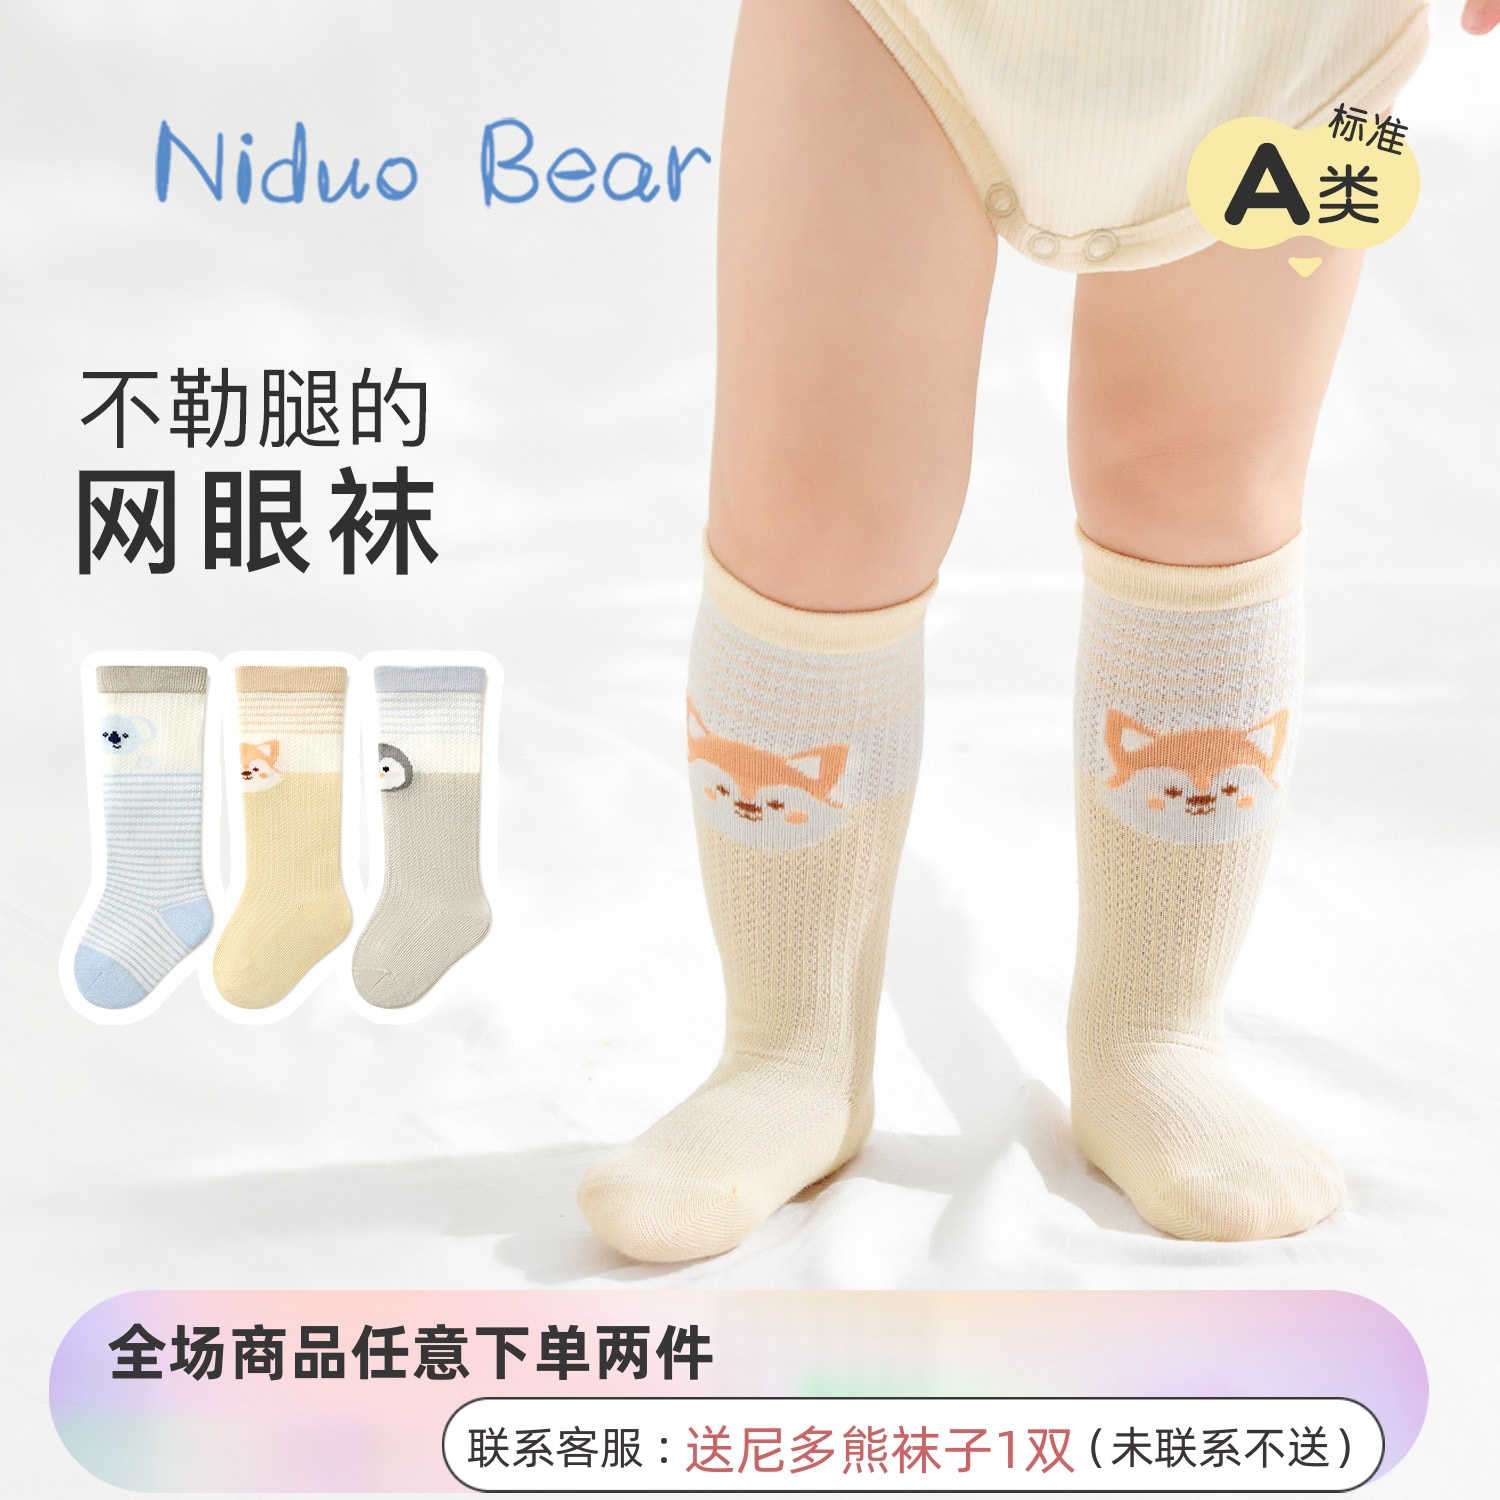 尼多熊男童长筒袜子宝宝夏季薄款棉袜婴儿透气网眼袜新生儿袜